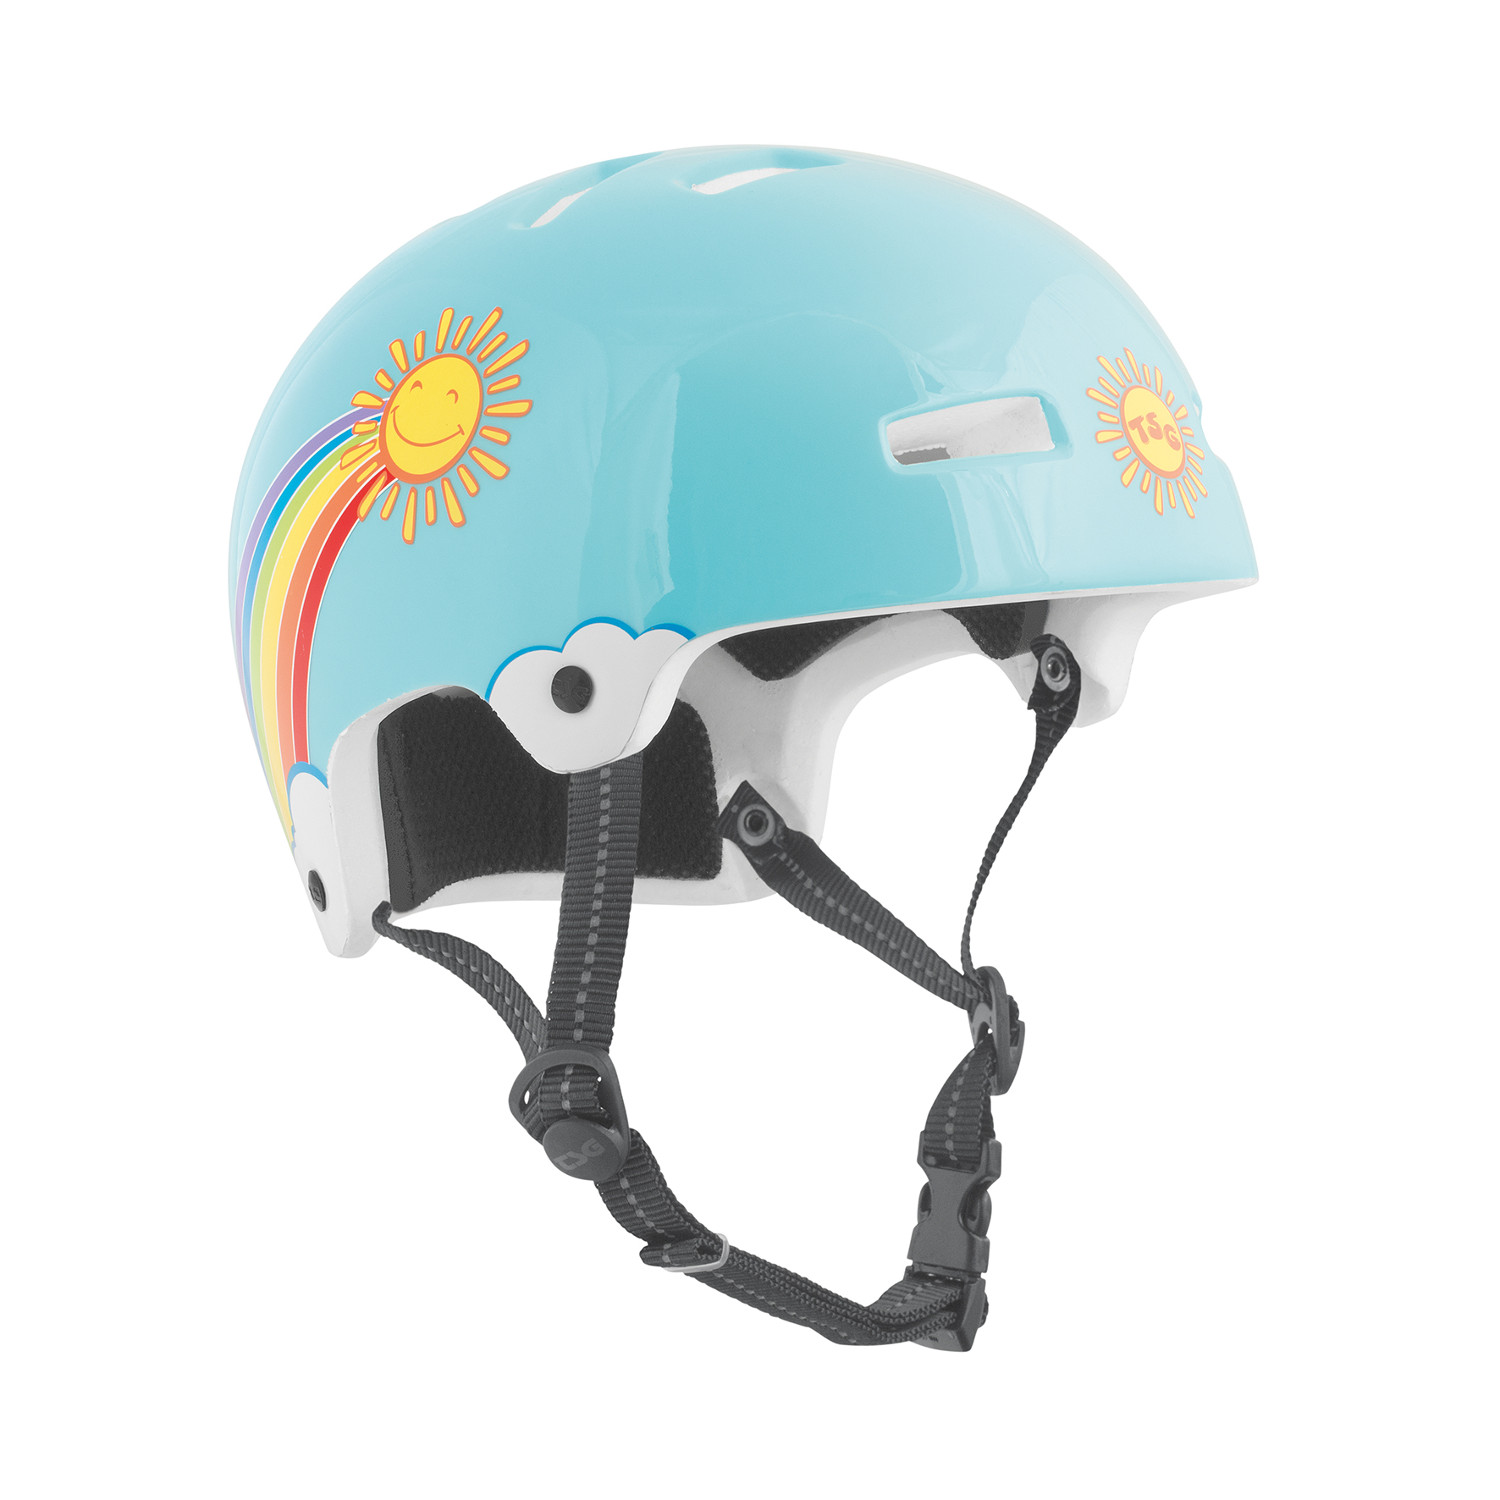 TSG Kids BMX/Dirt Helmet Nipper Maxi Graphic Design - Rainbow